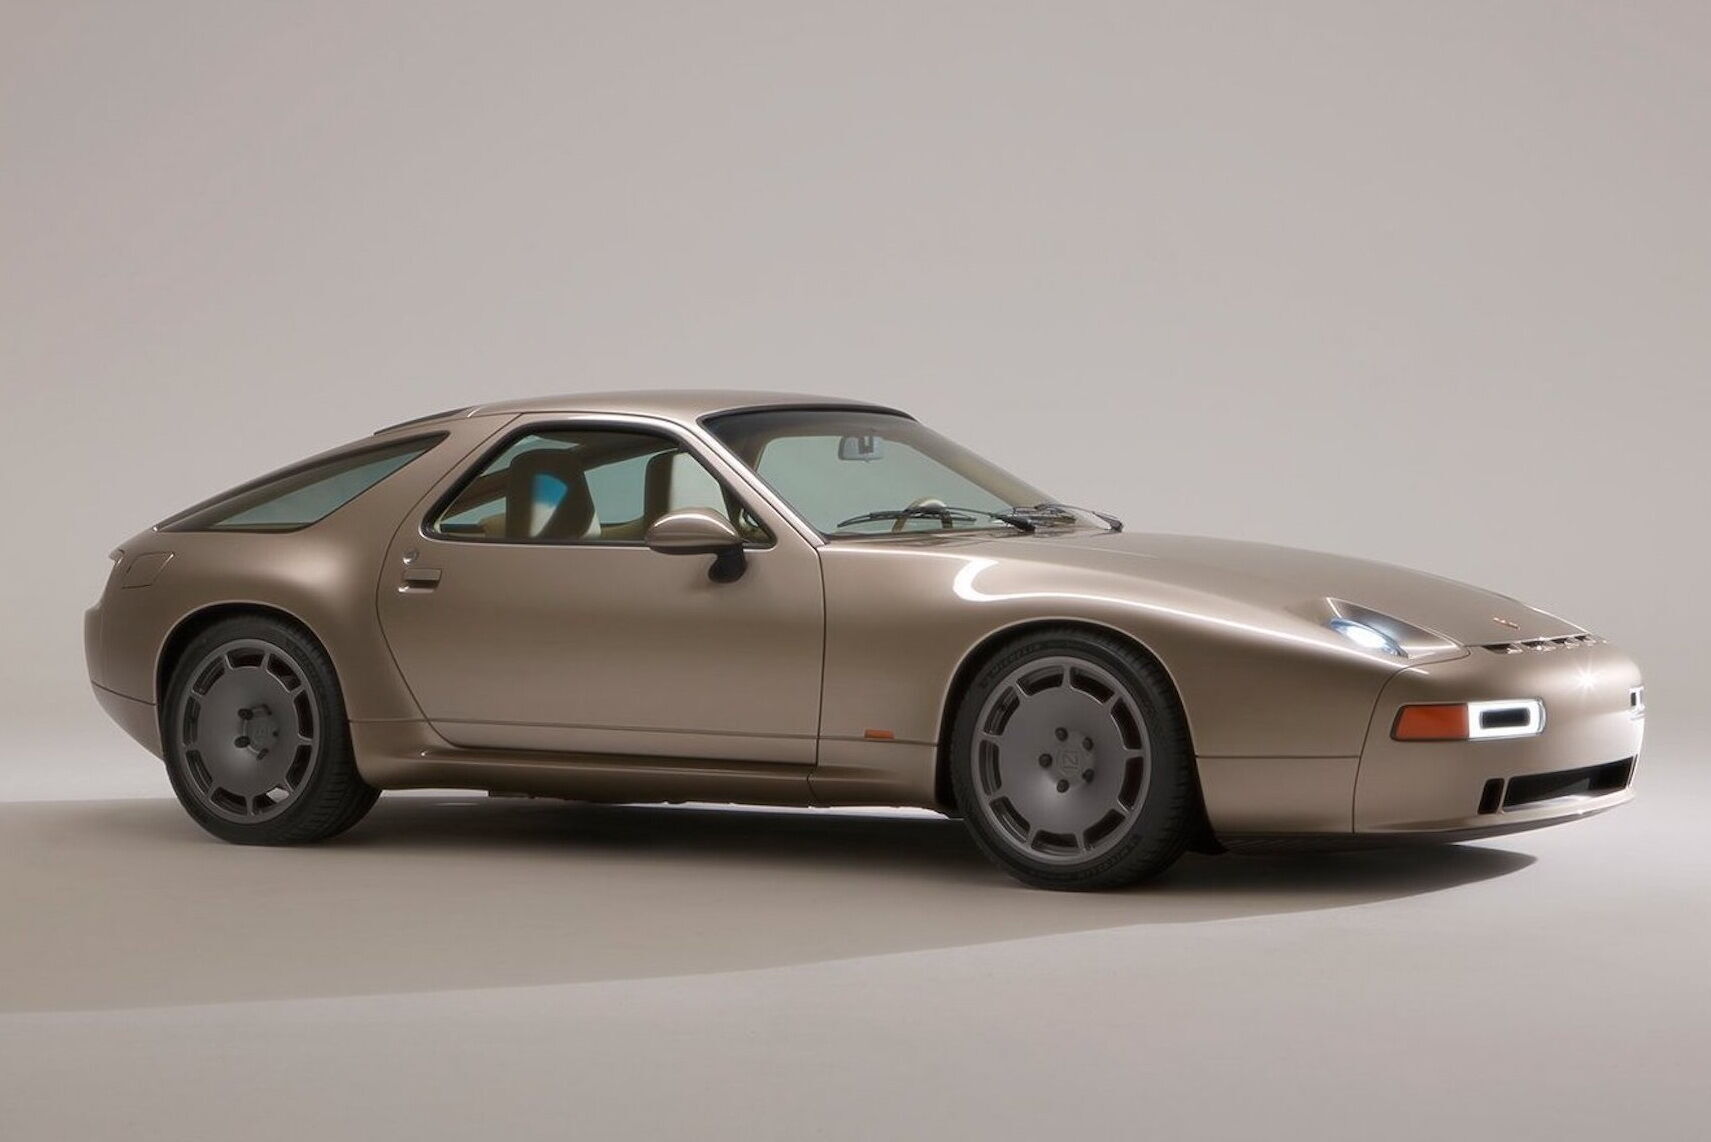 Автомобіль має впізнаваний дизайн та характерні стилістичні елементи Porsche 1977 року